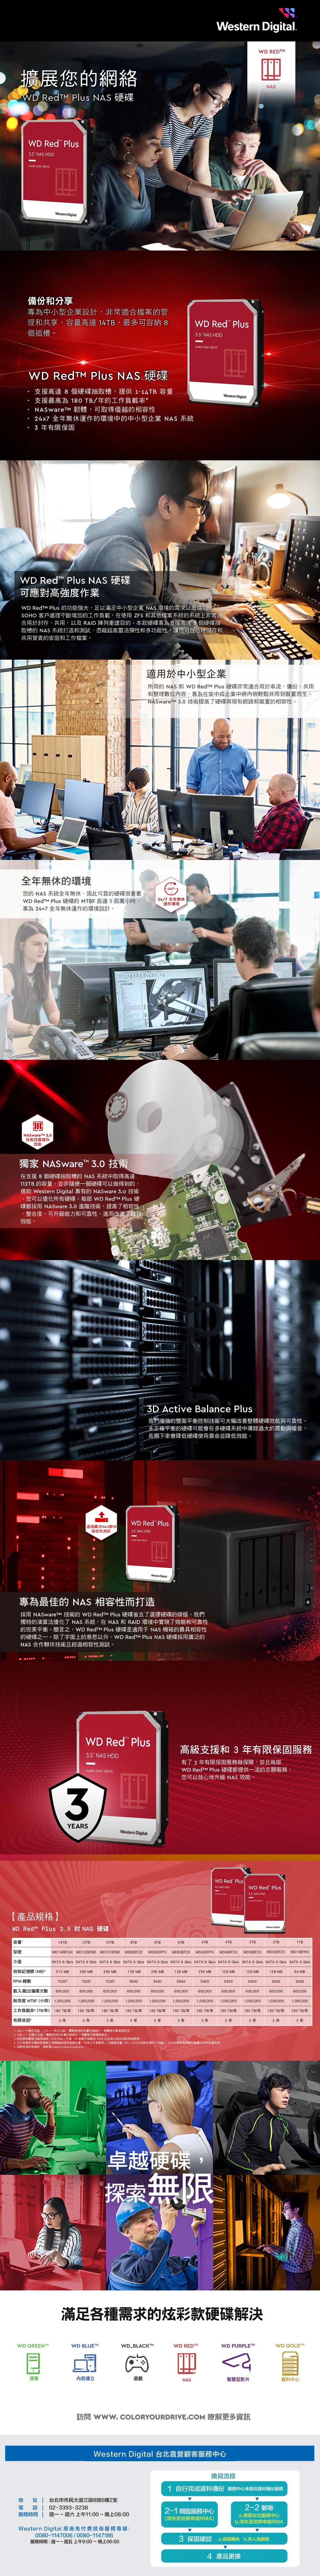 3年保証 即日出荷 新品 WD Red Plus 8TB内蔵HDD (NAS) 128MB